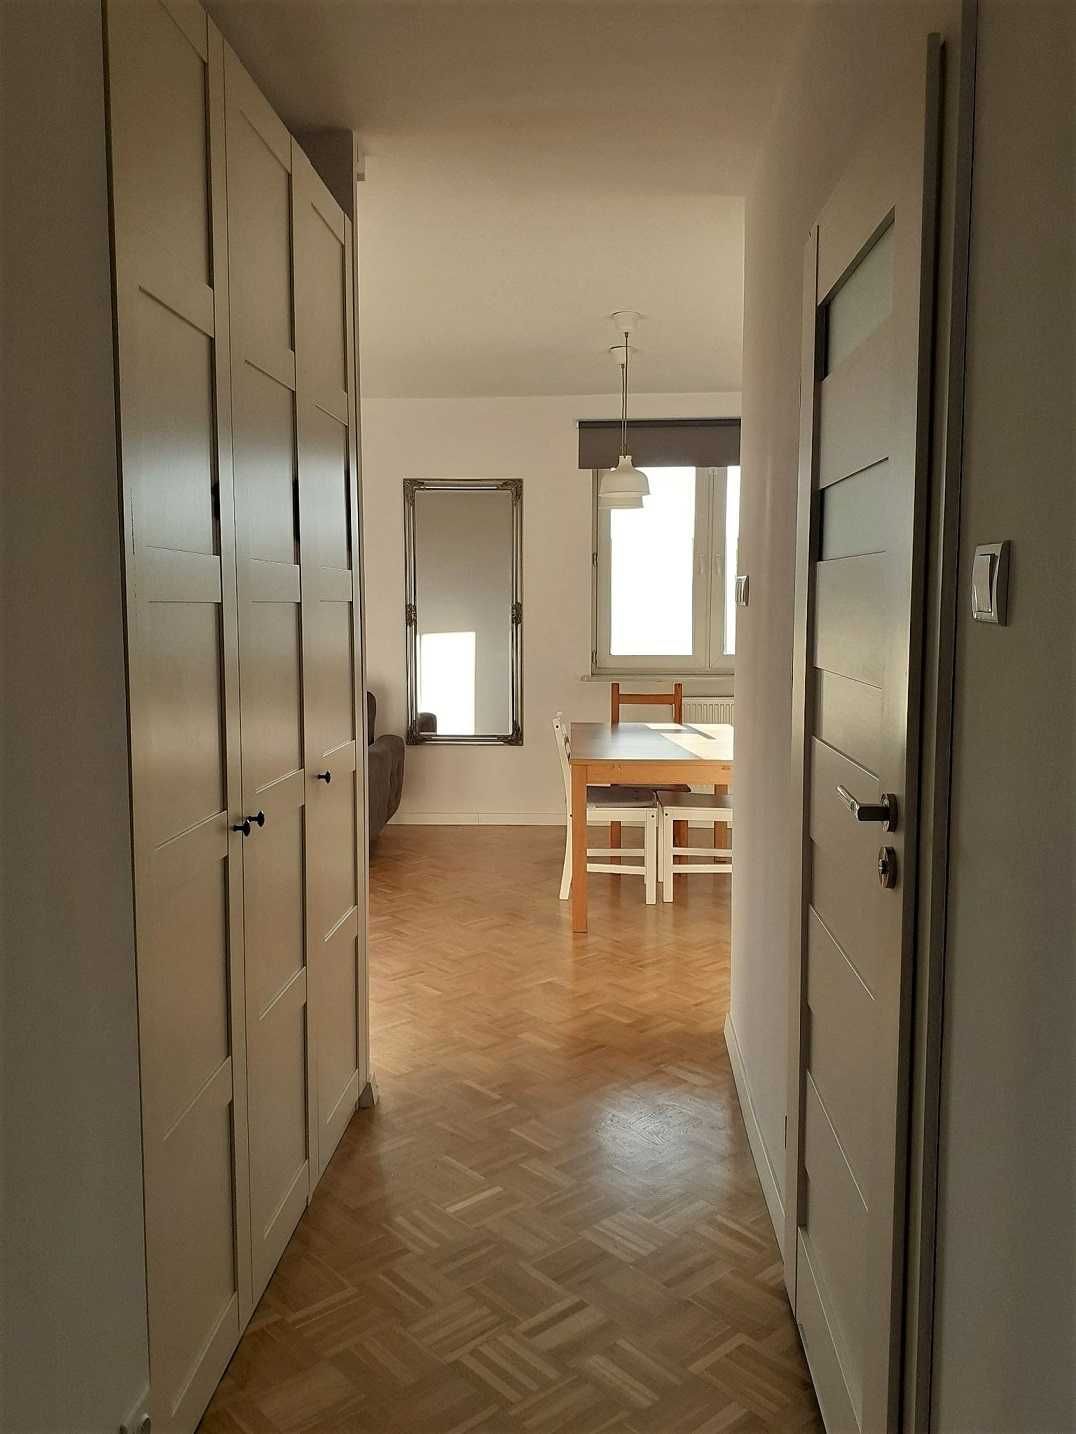 Mieszkanie 2 pokoje, 53 m2, III piętro - Chełmińskie Przedmieście